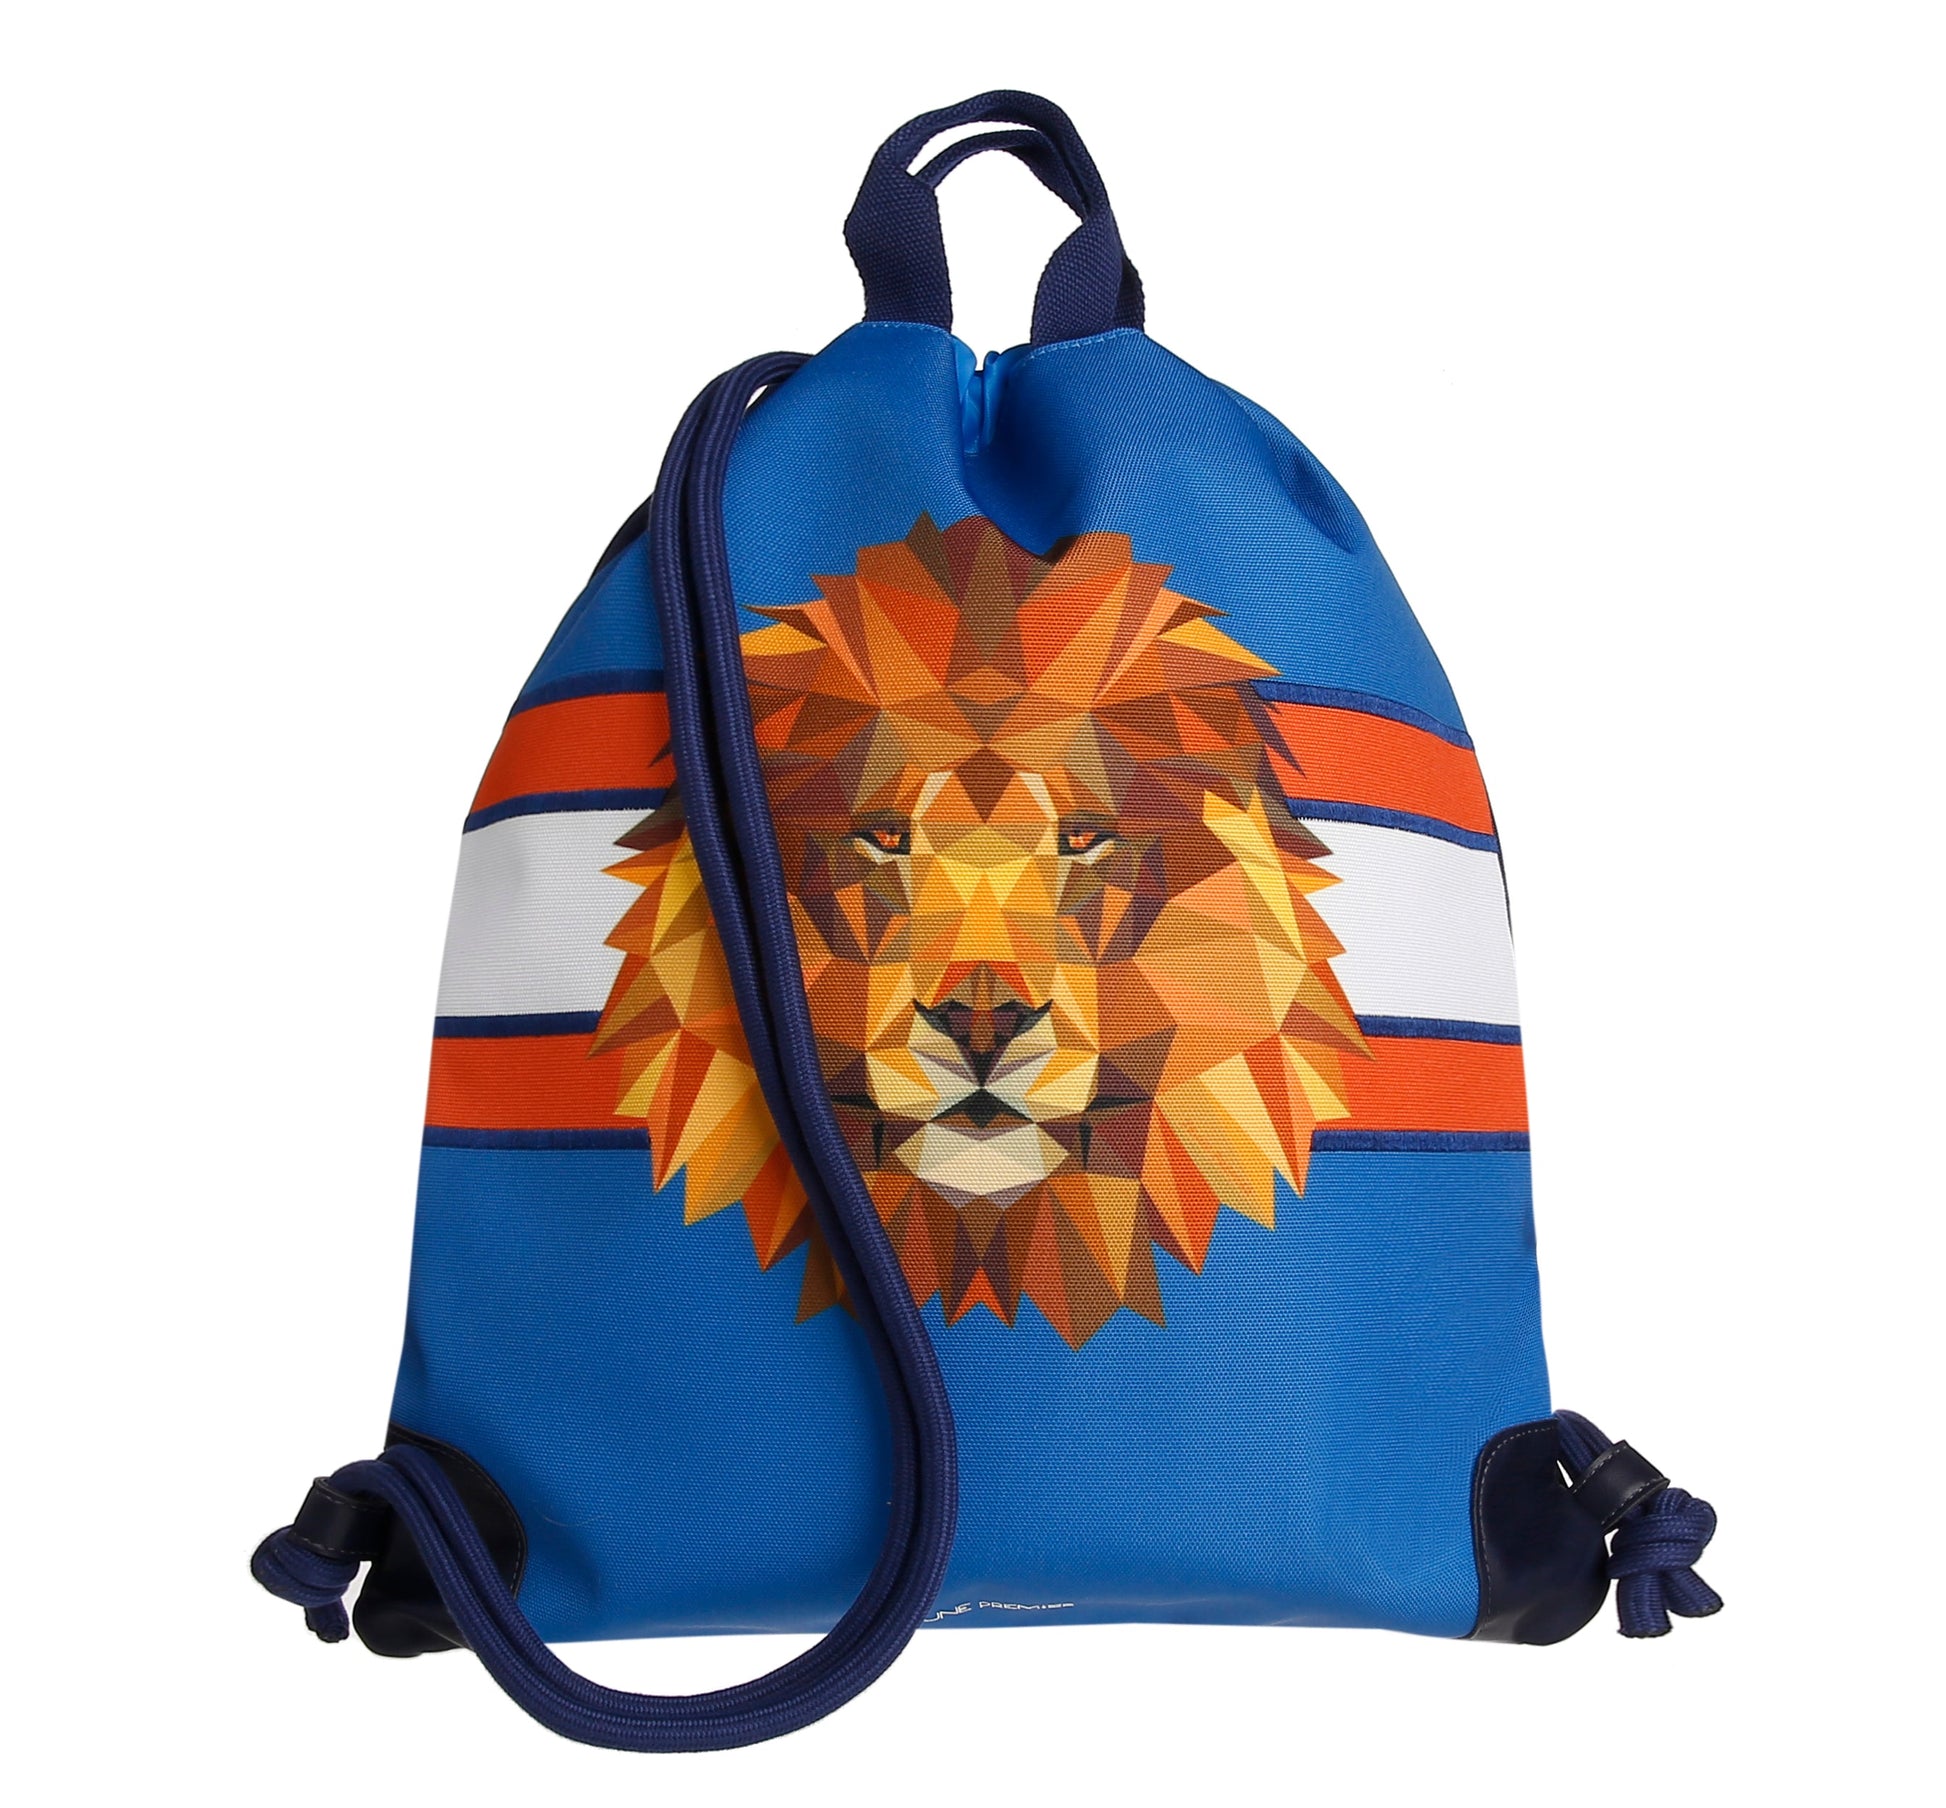 Jeune Premier City Bag - Lion Head City bag